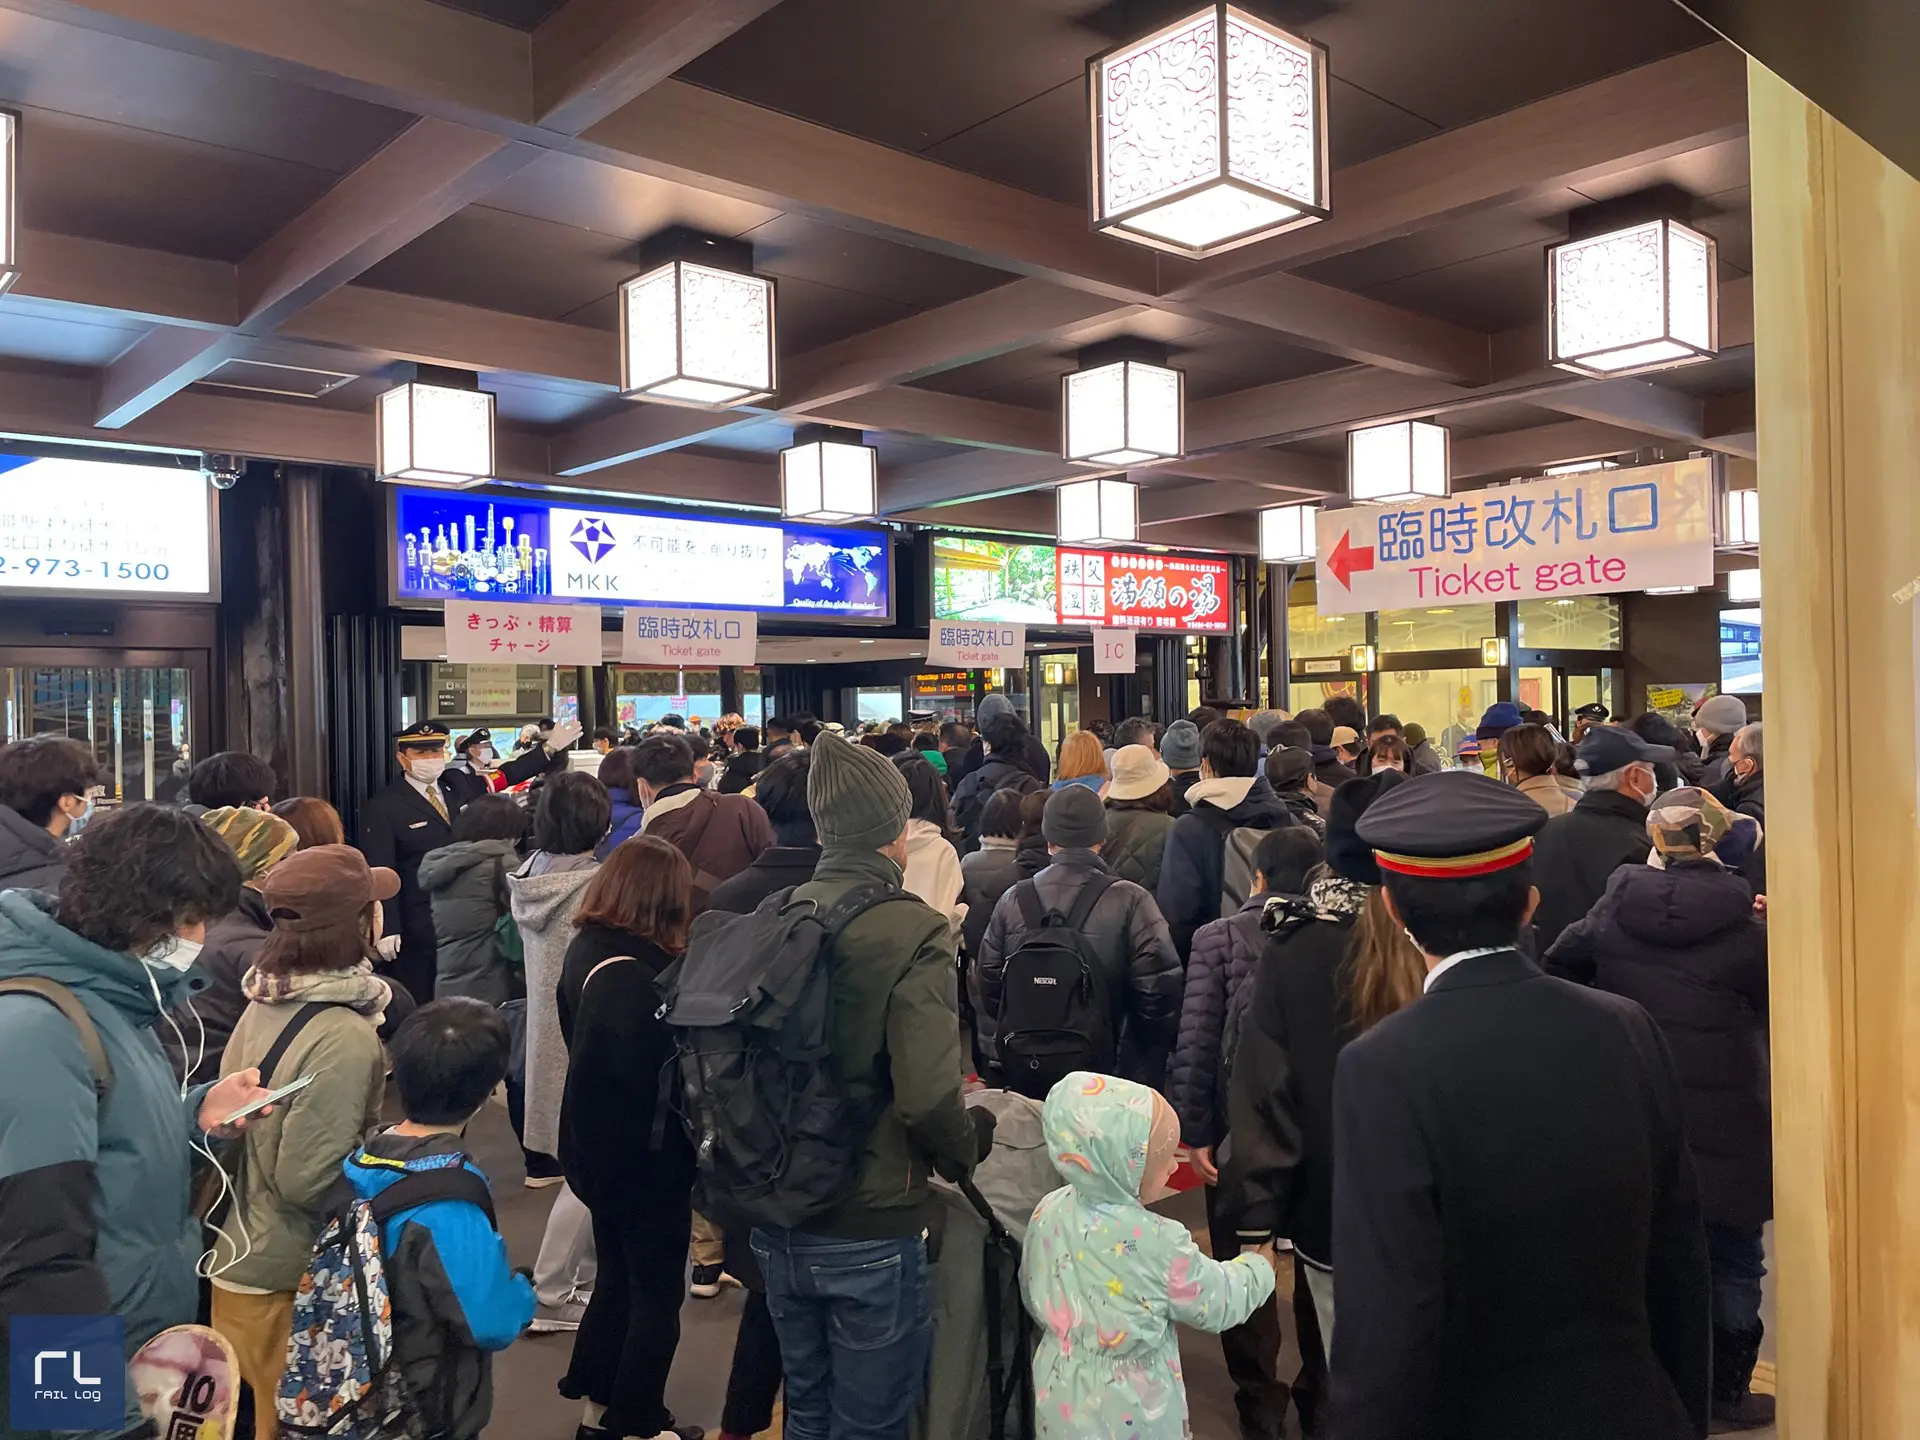 秩父夜祭大祭当日、西武秩父駅構内の様子です。駅界隈は常に混雑していますので要注意です。（2022.12.3撮影）